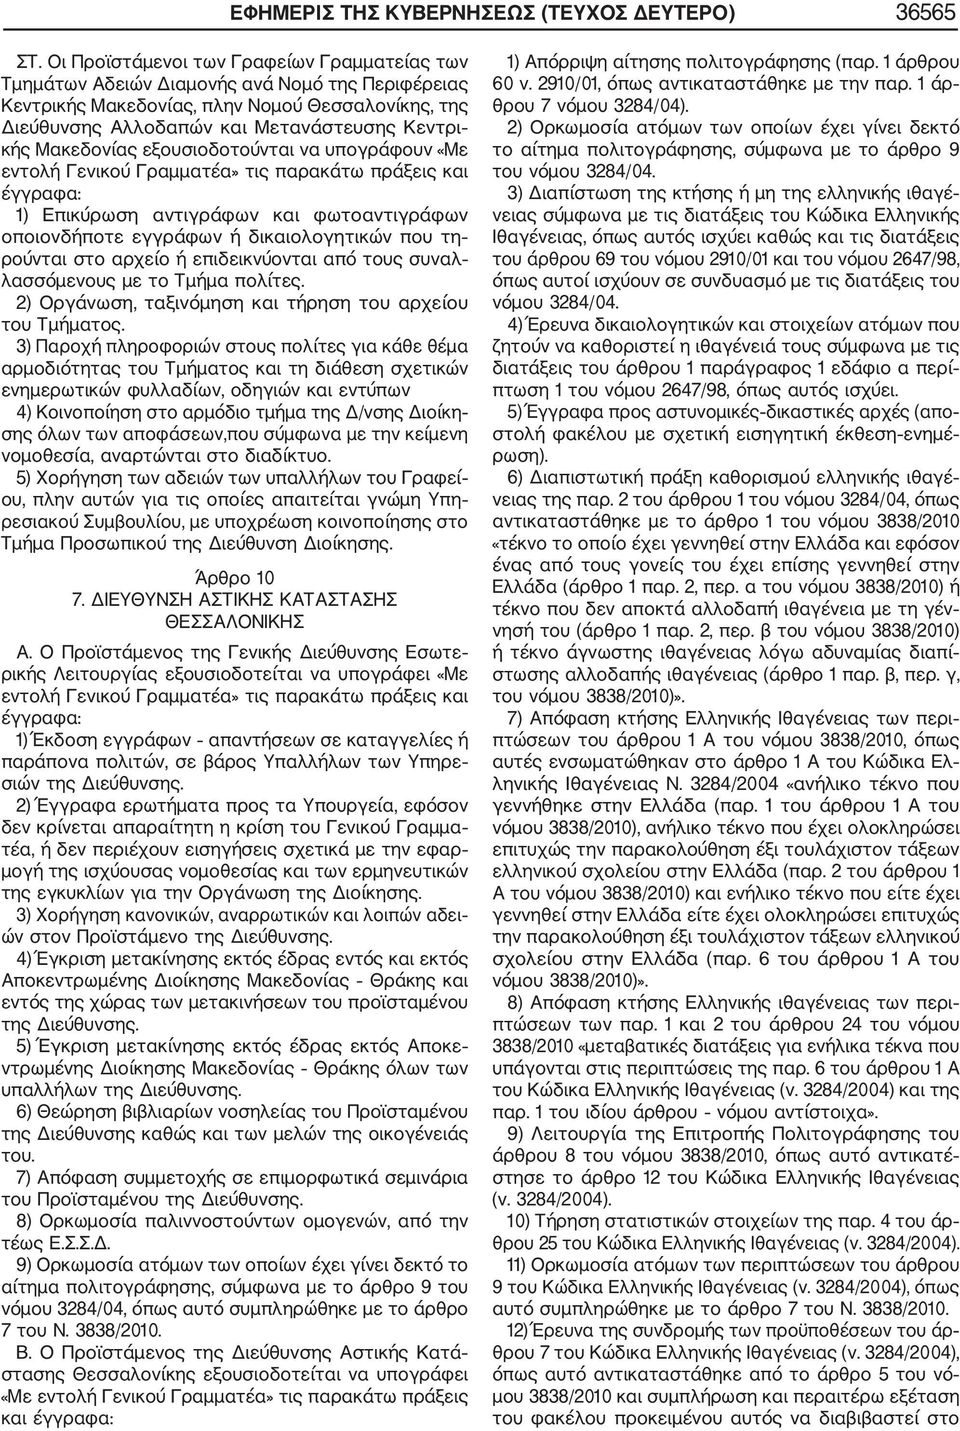 Μακεδονίας εξουσιοδοτούνται να υπογράφουν «Με εντολή Γενικού Γραμματέα» τις παρακάτω πράξεις και έγγραφα: 1) Επικύρωση αντιγράφων και φωτοαντιγράφων οποιονδήποτε εγγράφων ή δικαιολογητικών που τη